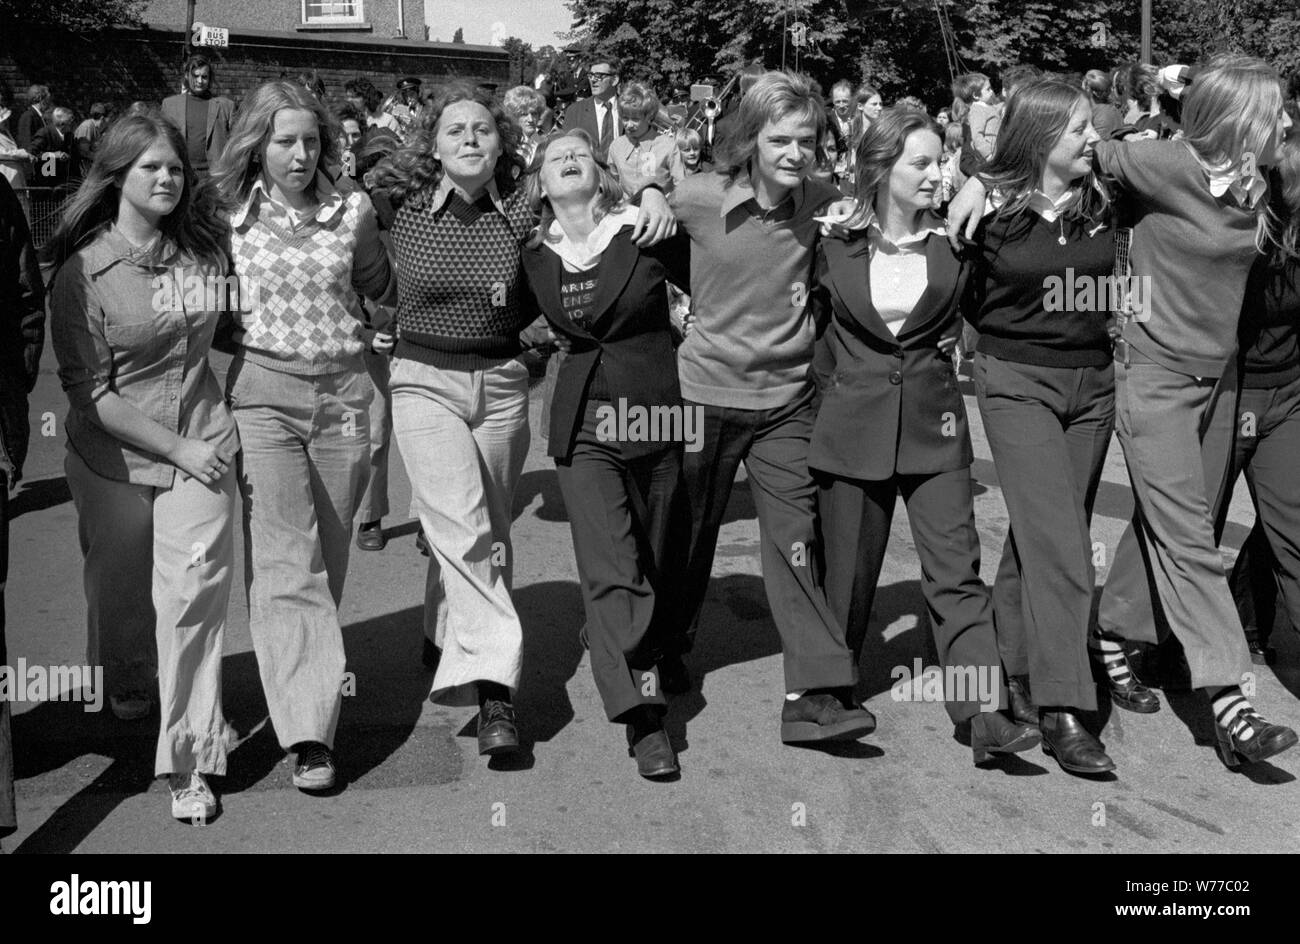 Le ragazze adolescenti si uniscono alle armi divertendosi, con un look elegante anni '1970 al gala annuale Durham Coal Miners County Durham UK 70s. Un bambino in mezzo. Tutte le ragazze indossano pantaloni.1974 England HOMER SYKES Foto Stock